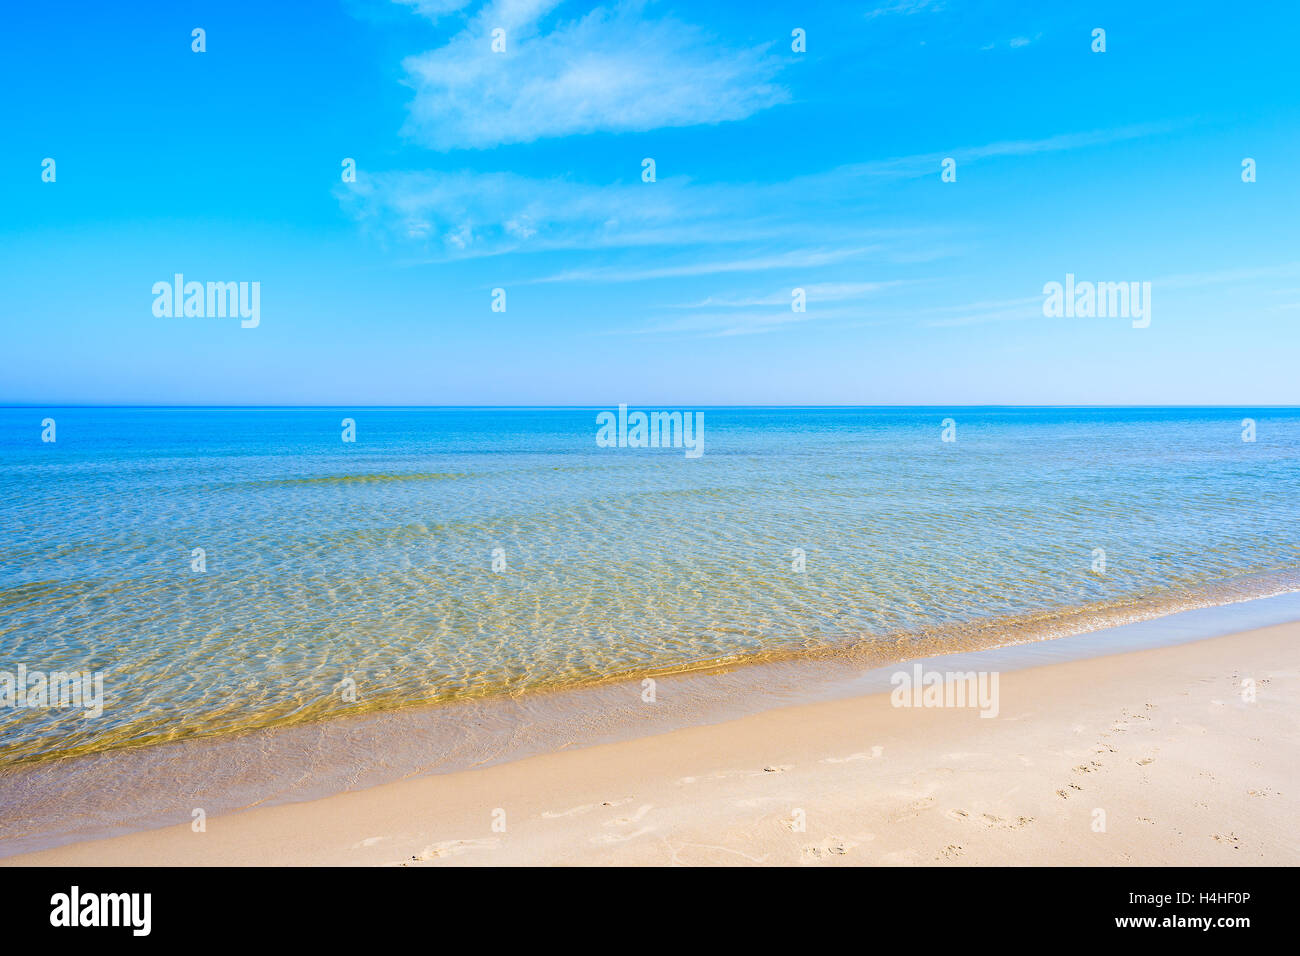 Plage de sable avec calme la mer d'azur de l'eau dans la mer Baltique, Leba, Pologne Banque D'Images